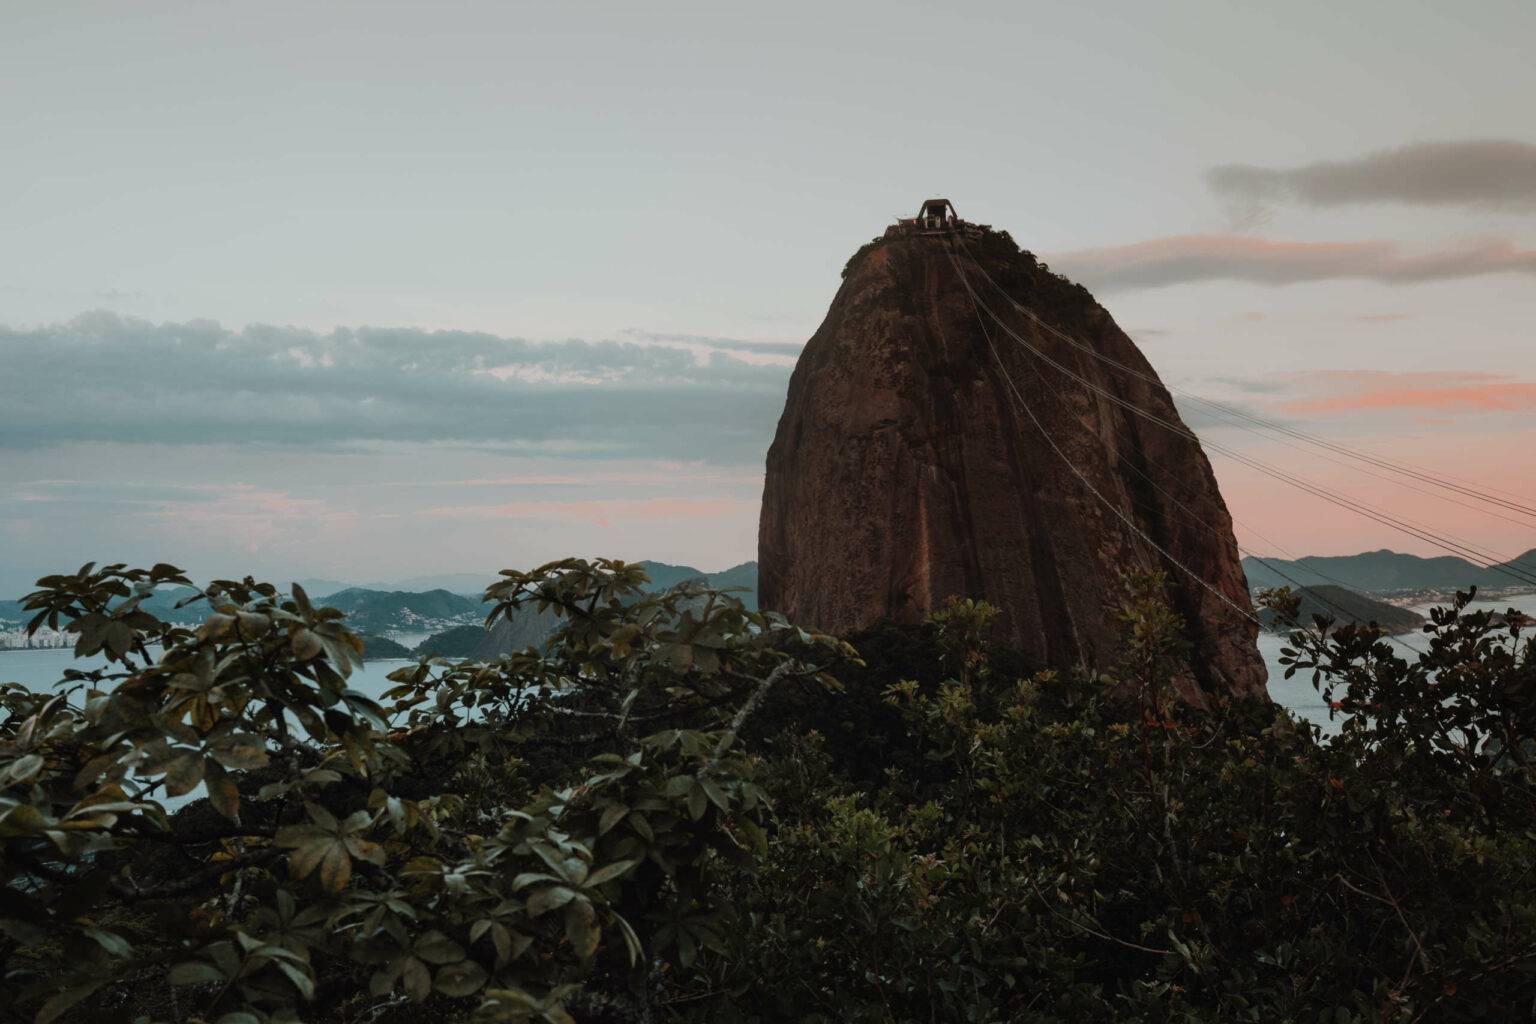 Bei Sonnenuntergang besonders schön: Der Zuckerhut, das zweite große Wahrzeichen Rios.